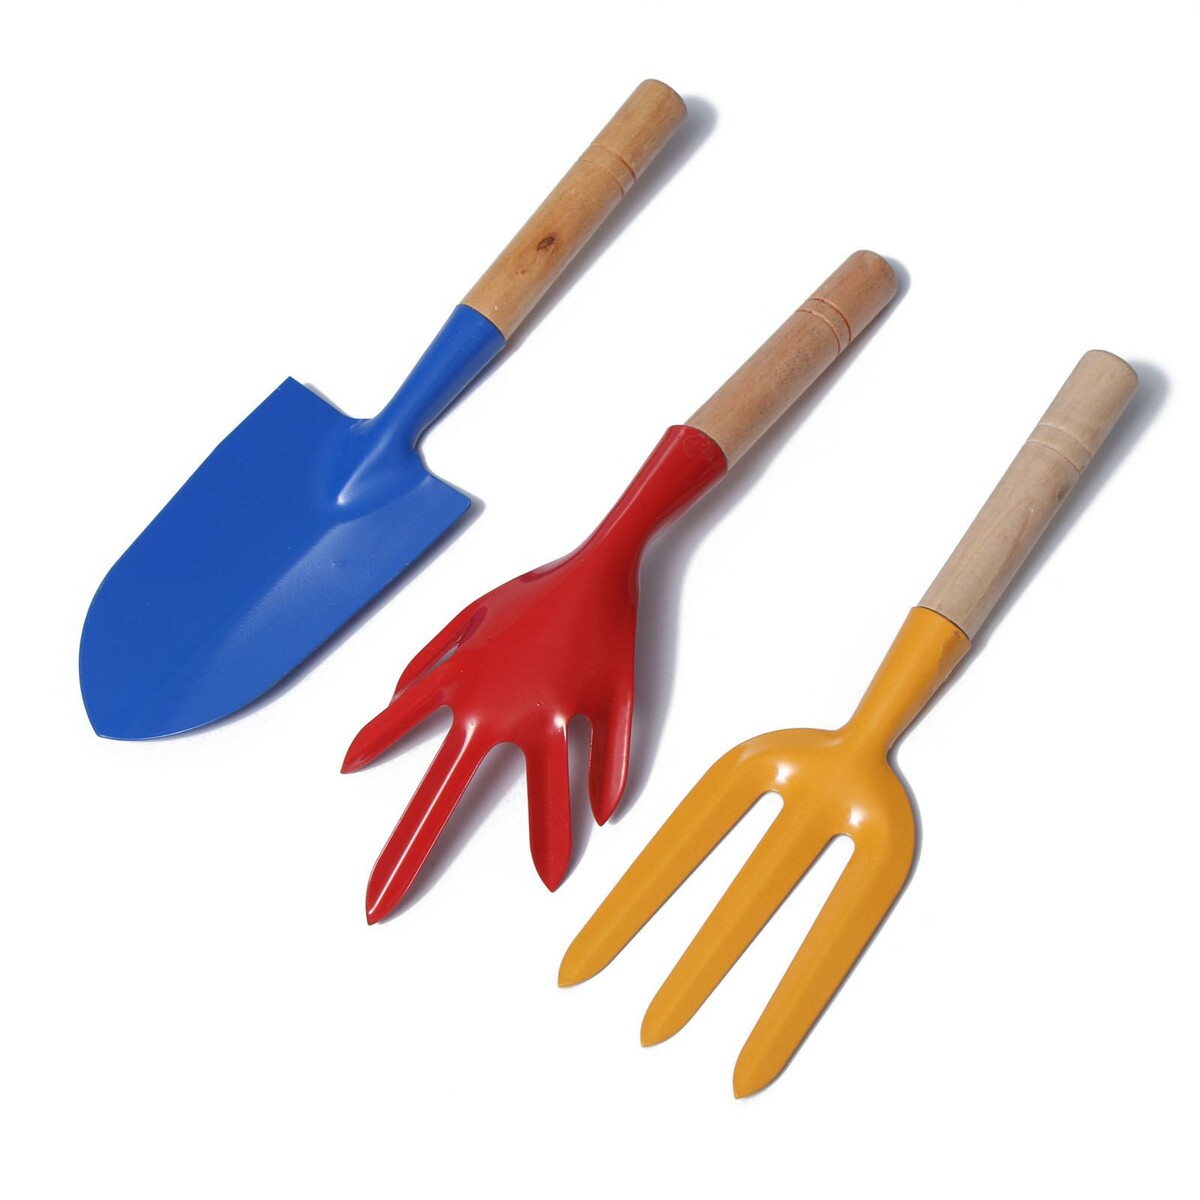 Набор садового инструмента, 3 предмета: совок, рыхлитель, вилка, длина 28 см, деревянные ручки набор совок и щётка paul masquin